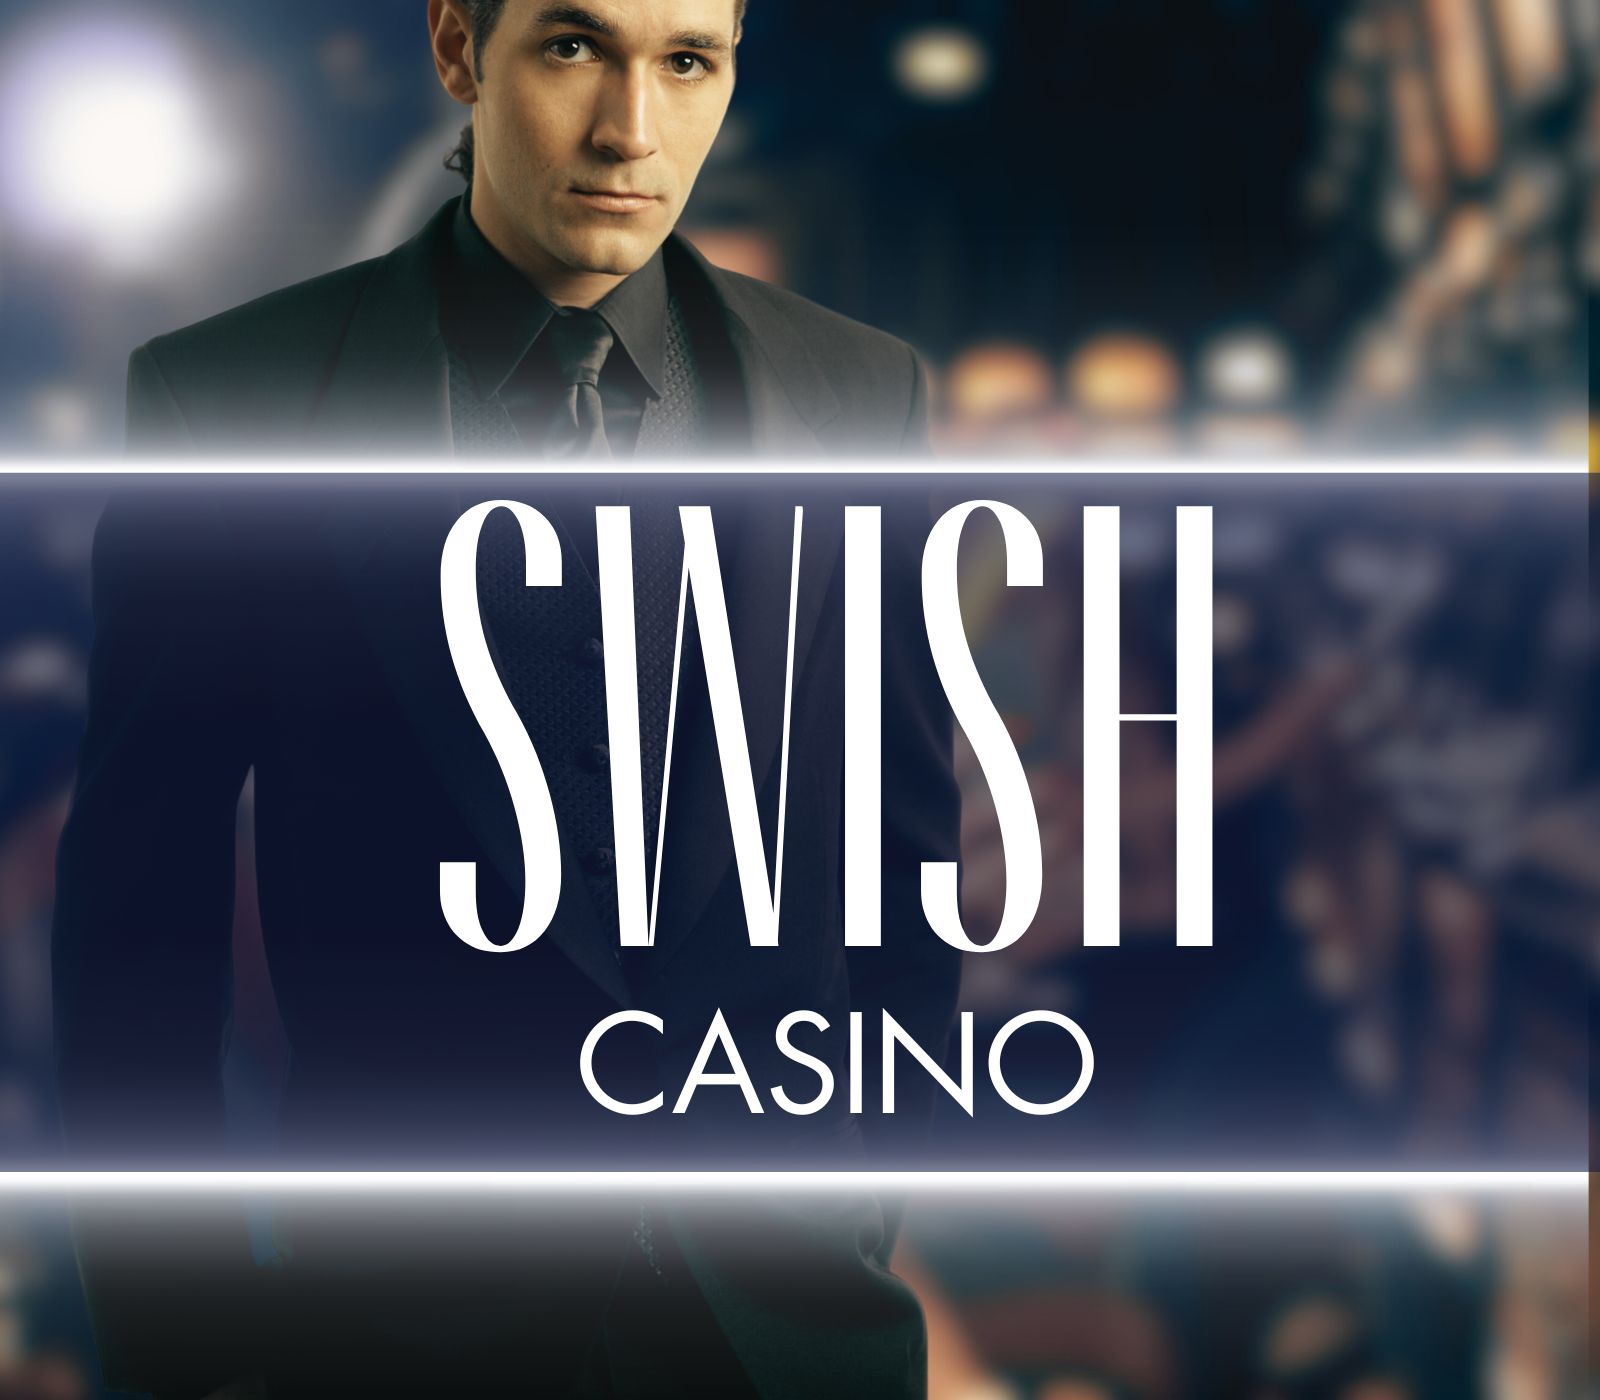 Swish Casino